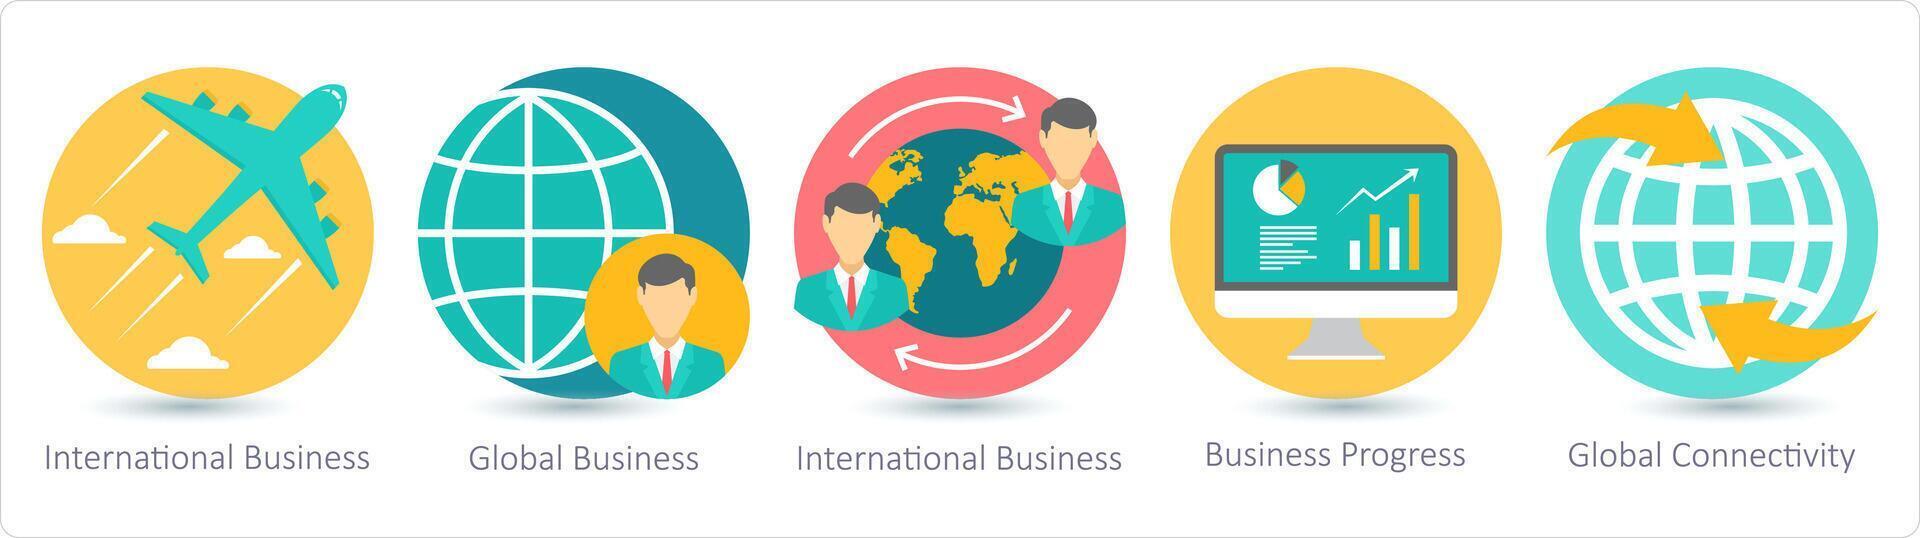 een reeks van 5 bedrijf pictogrammen net zo Internationale bedrijf, globaal bedrijf, bedrijf vooruitgang vector